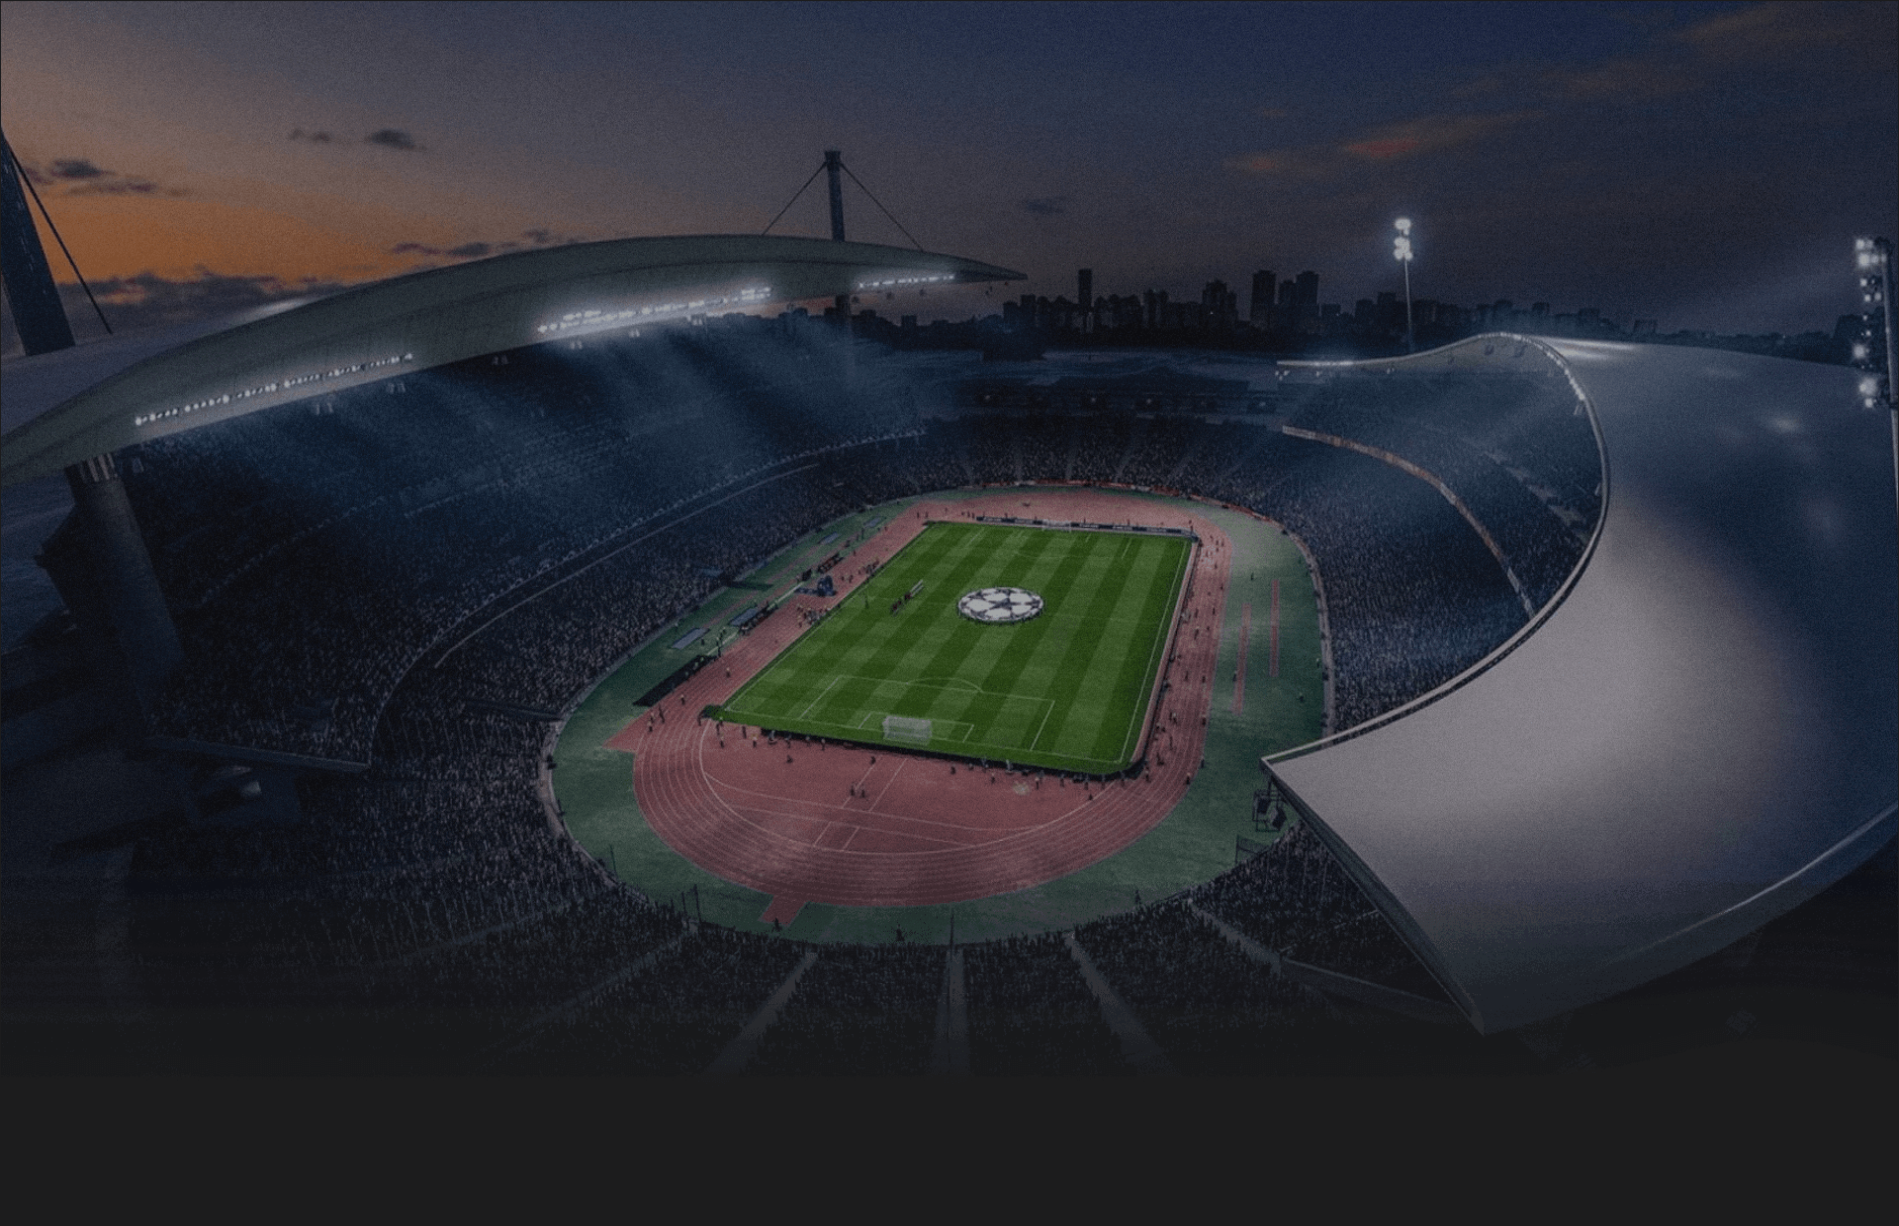 Ataturk Olympic Stadium